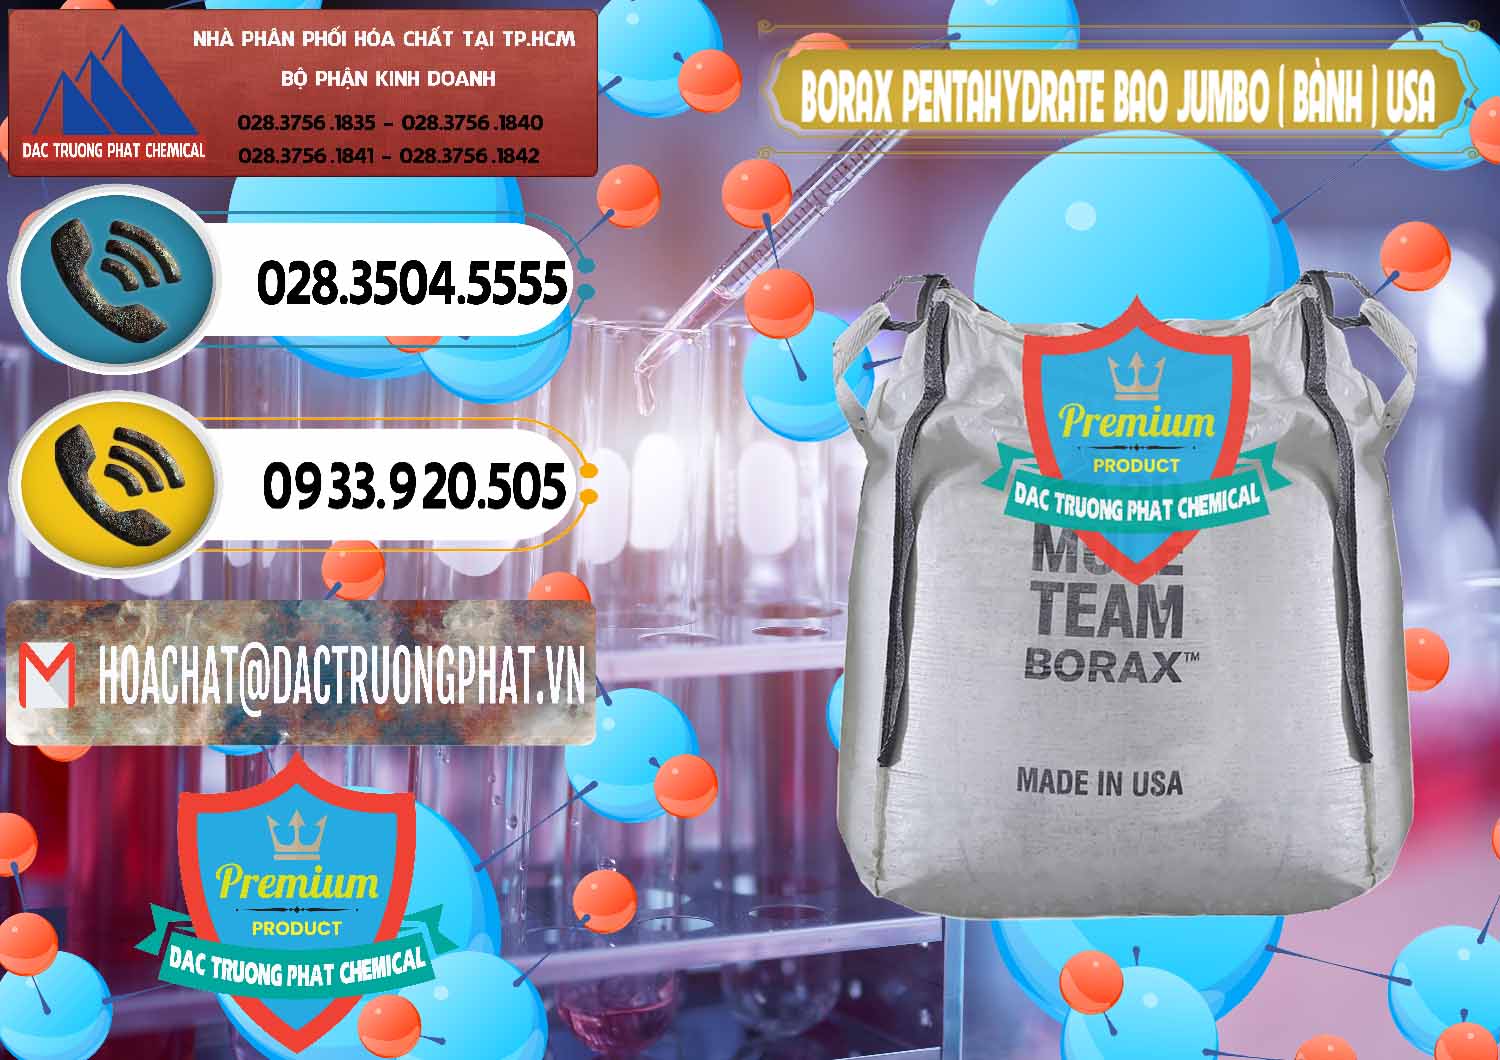 Công ty cung cấp & bán Borax Pentahydrate Bao Jumbo ( Bành ) Mule 20 Team Mỹ Usa - 0278 - Nhà cung cấp và phân phối hóa chất tại TP.HCM - hoachatdetnhuom.vn